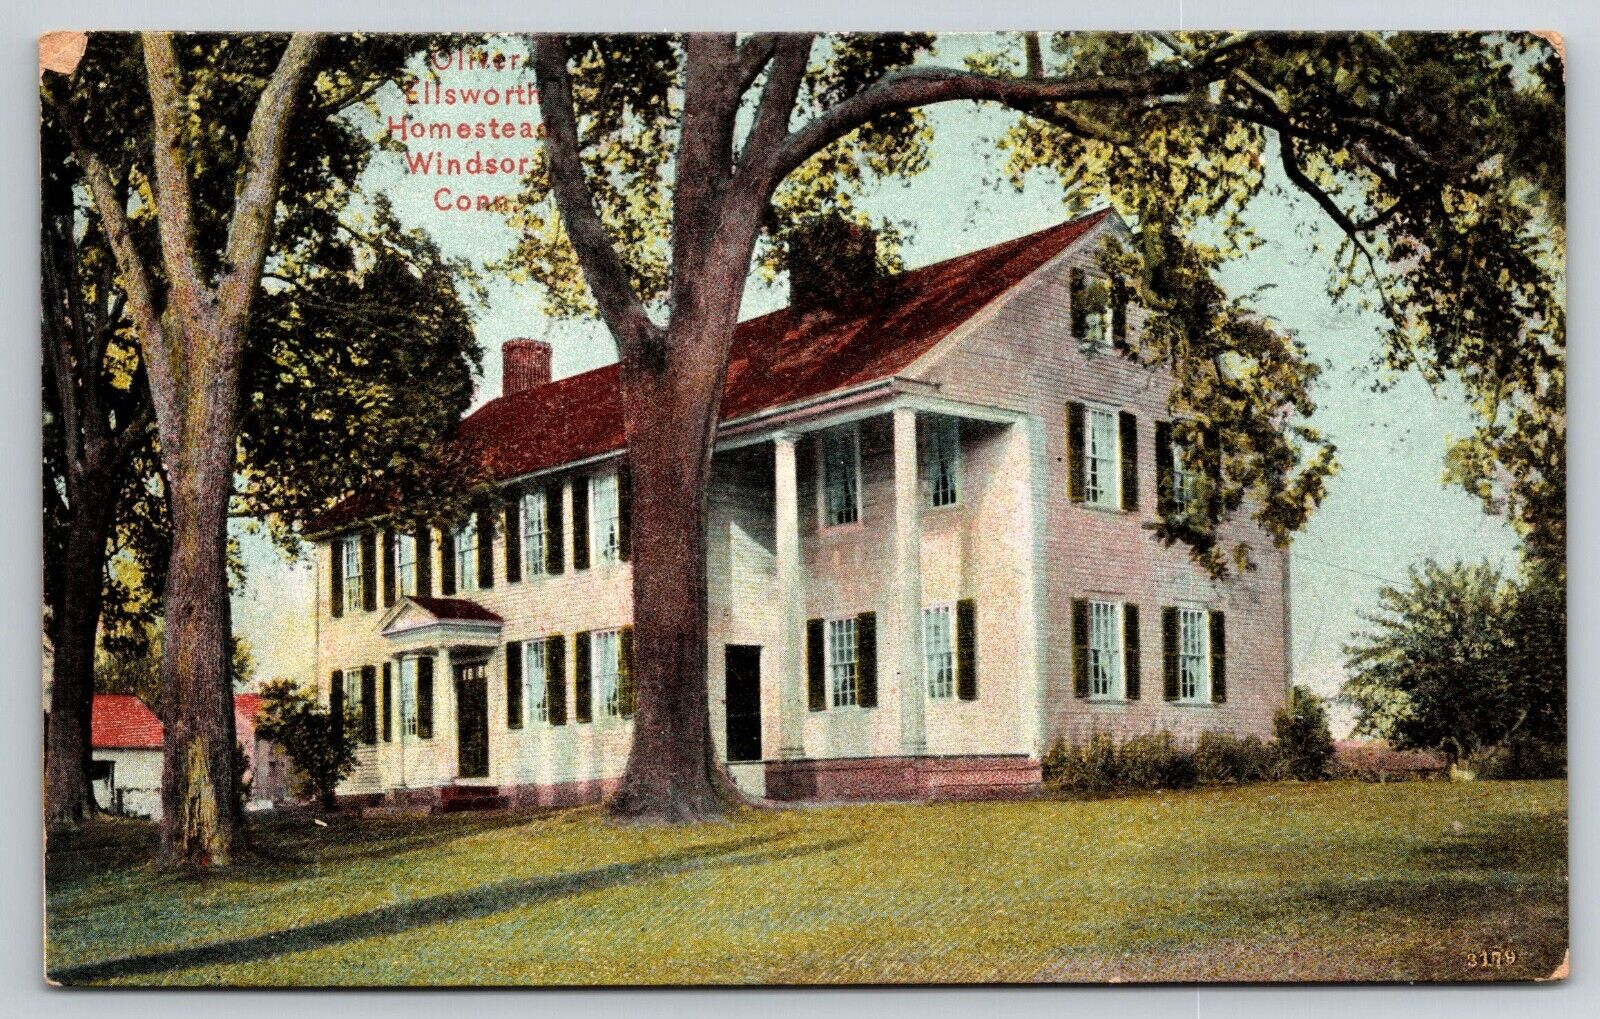 Oliver Ellsworth Homestead, Windsor, Connecticut 1900s Postcard S4-540